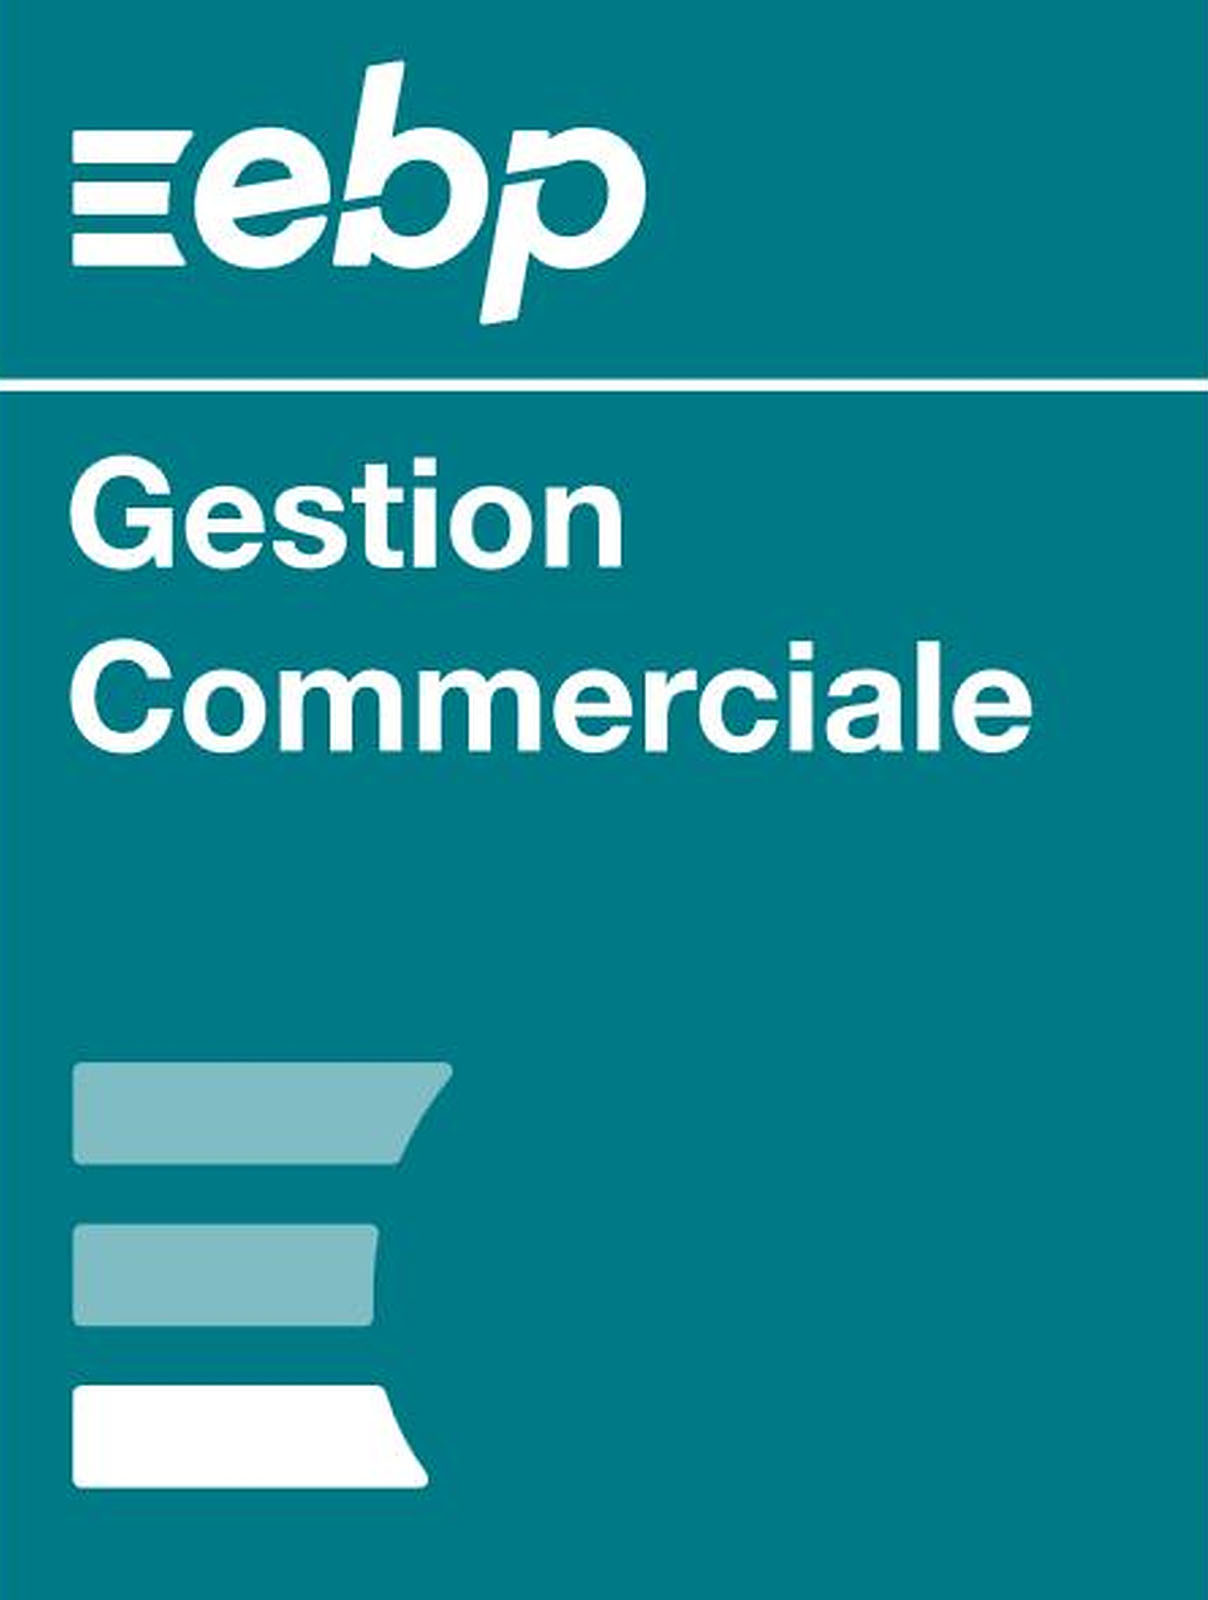 EBP_Gestion_Commerciale